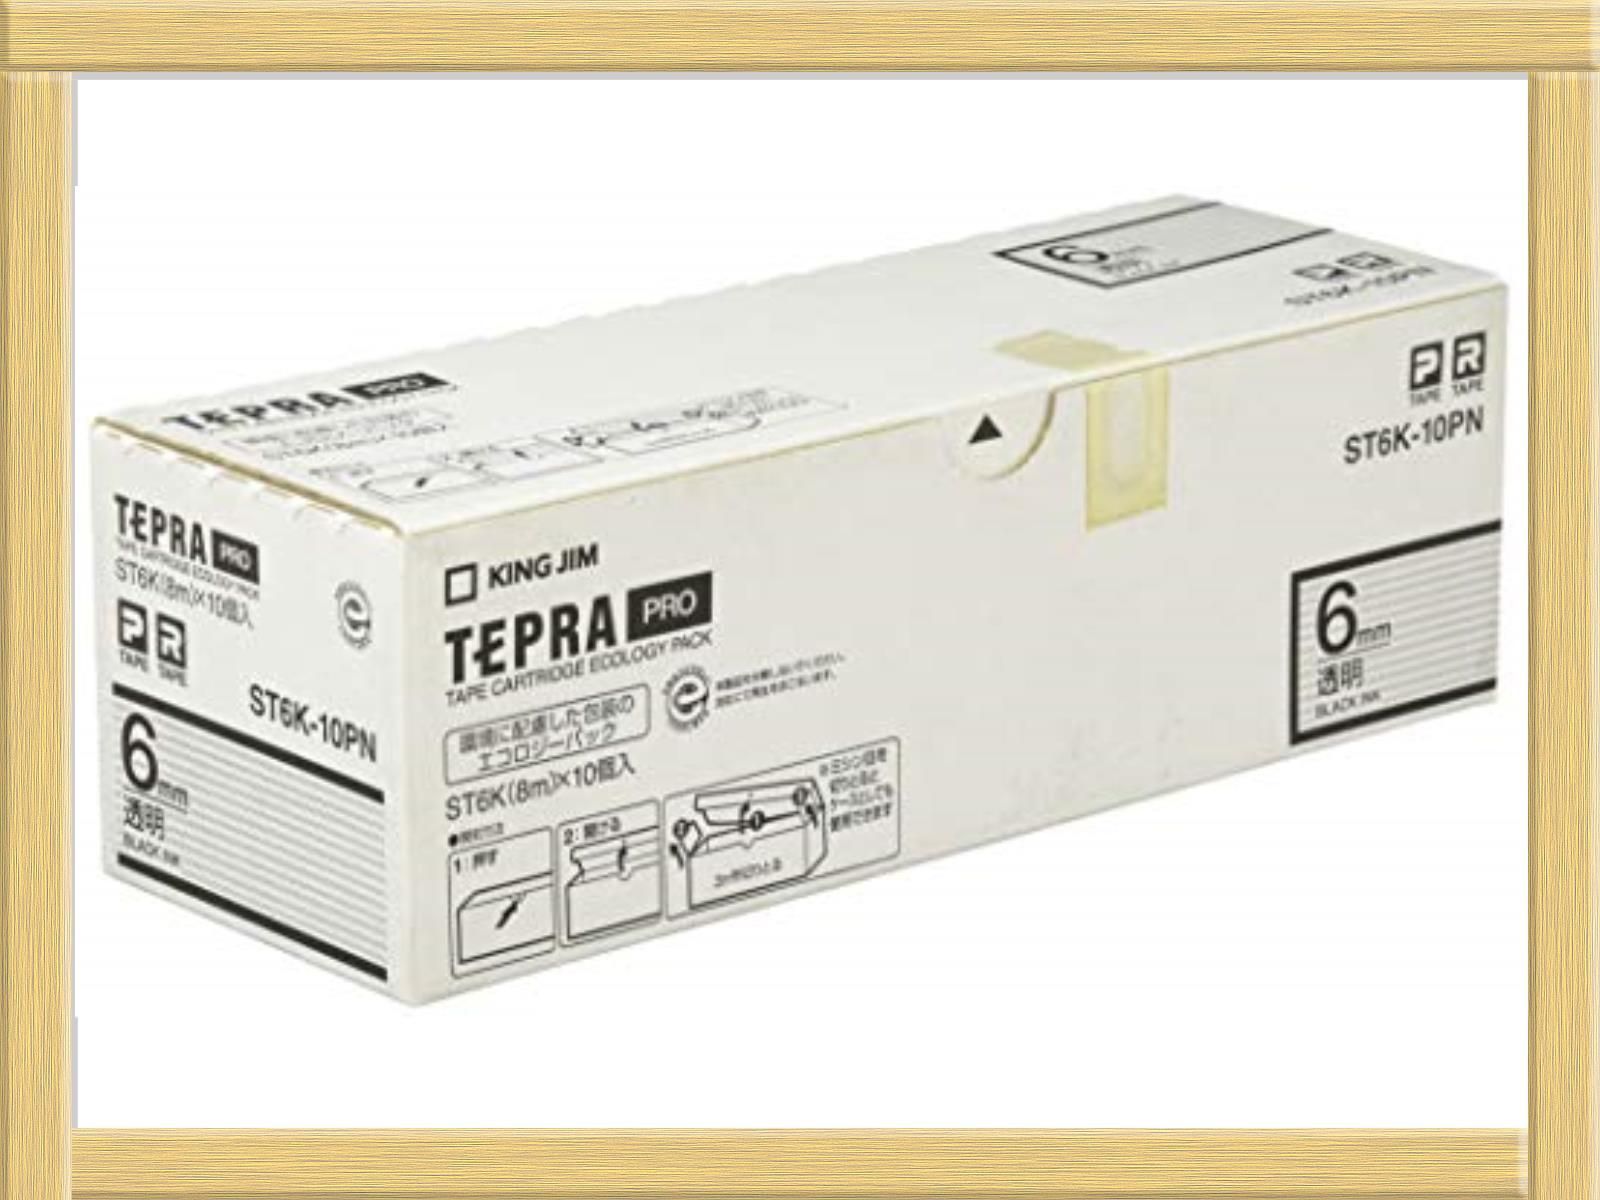 黒,透明 キングジム テプラPRO テープカートリッジ エコパック10個入 6mm 透明 ST6K-10PN 生活雑貨/NEWSTANDARD  メルカリ